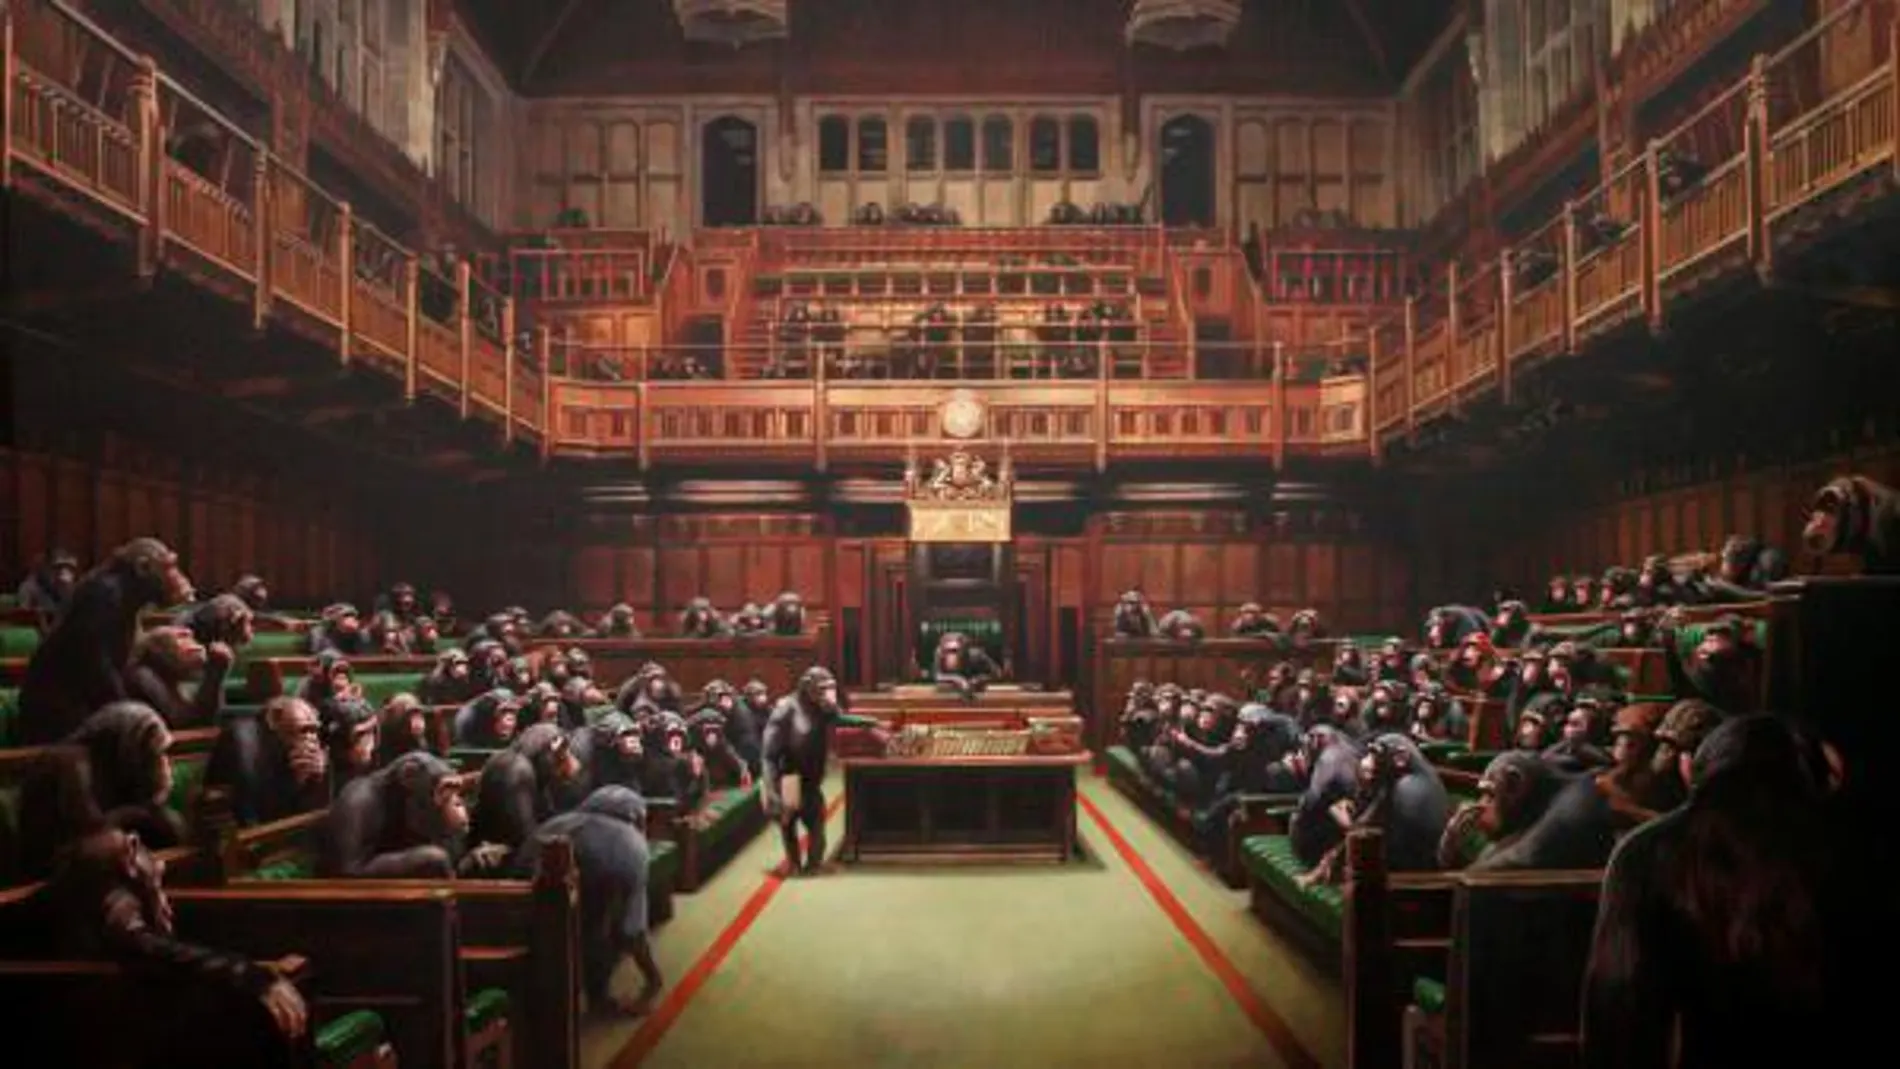 Once millones de euros por la pintura de Banksy del Parlamento británico con chimpancés